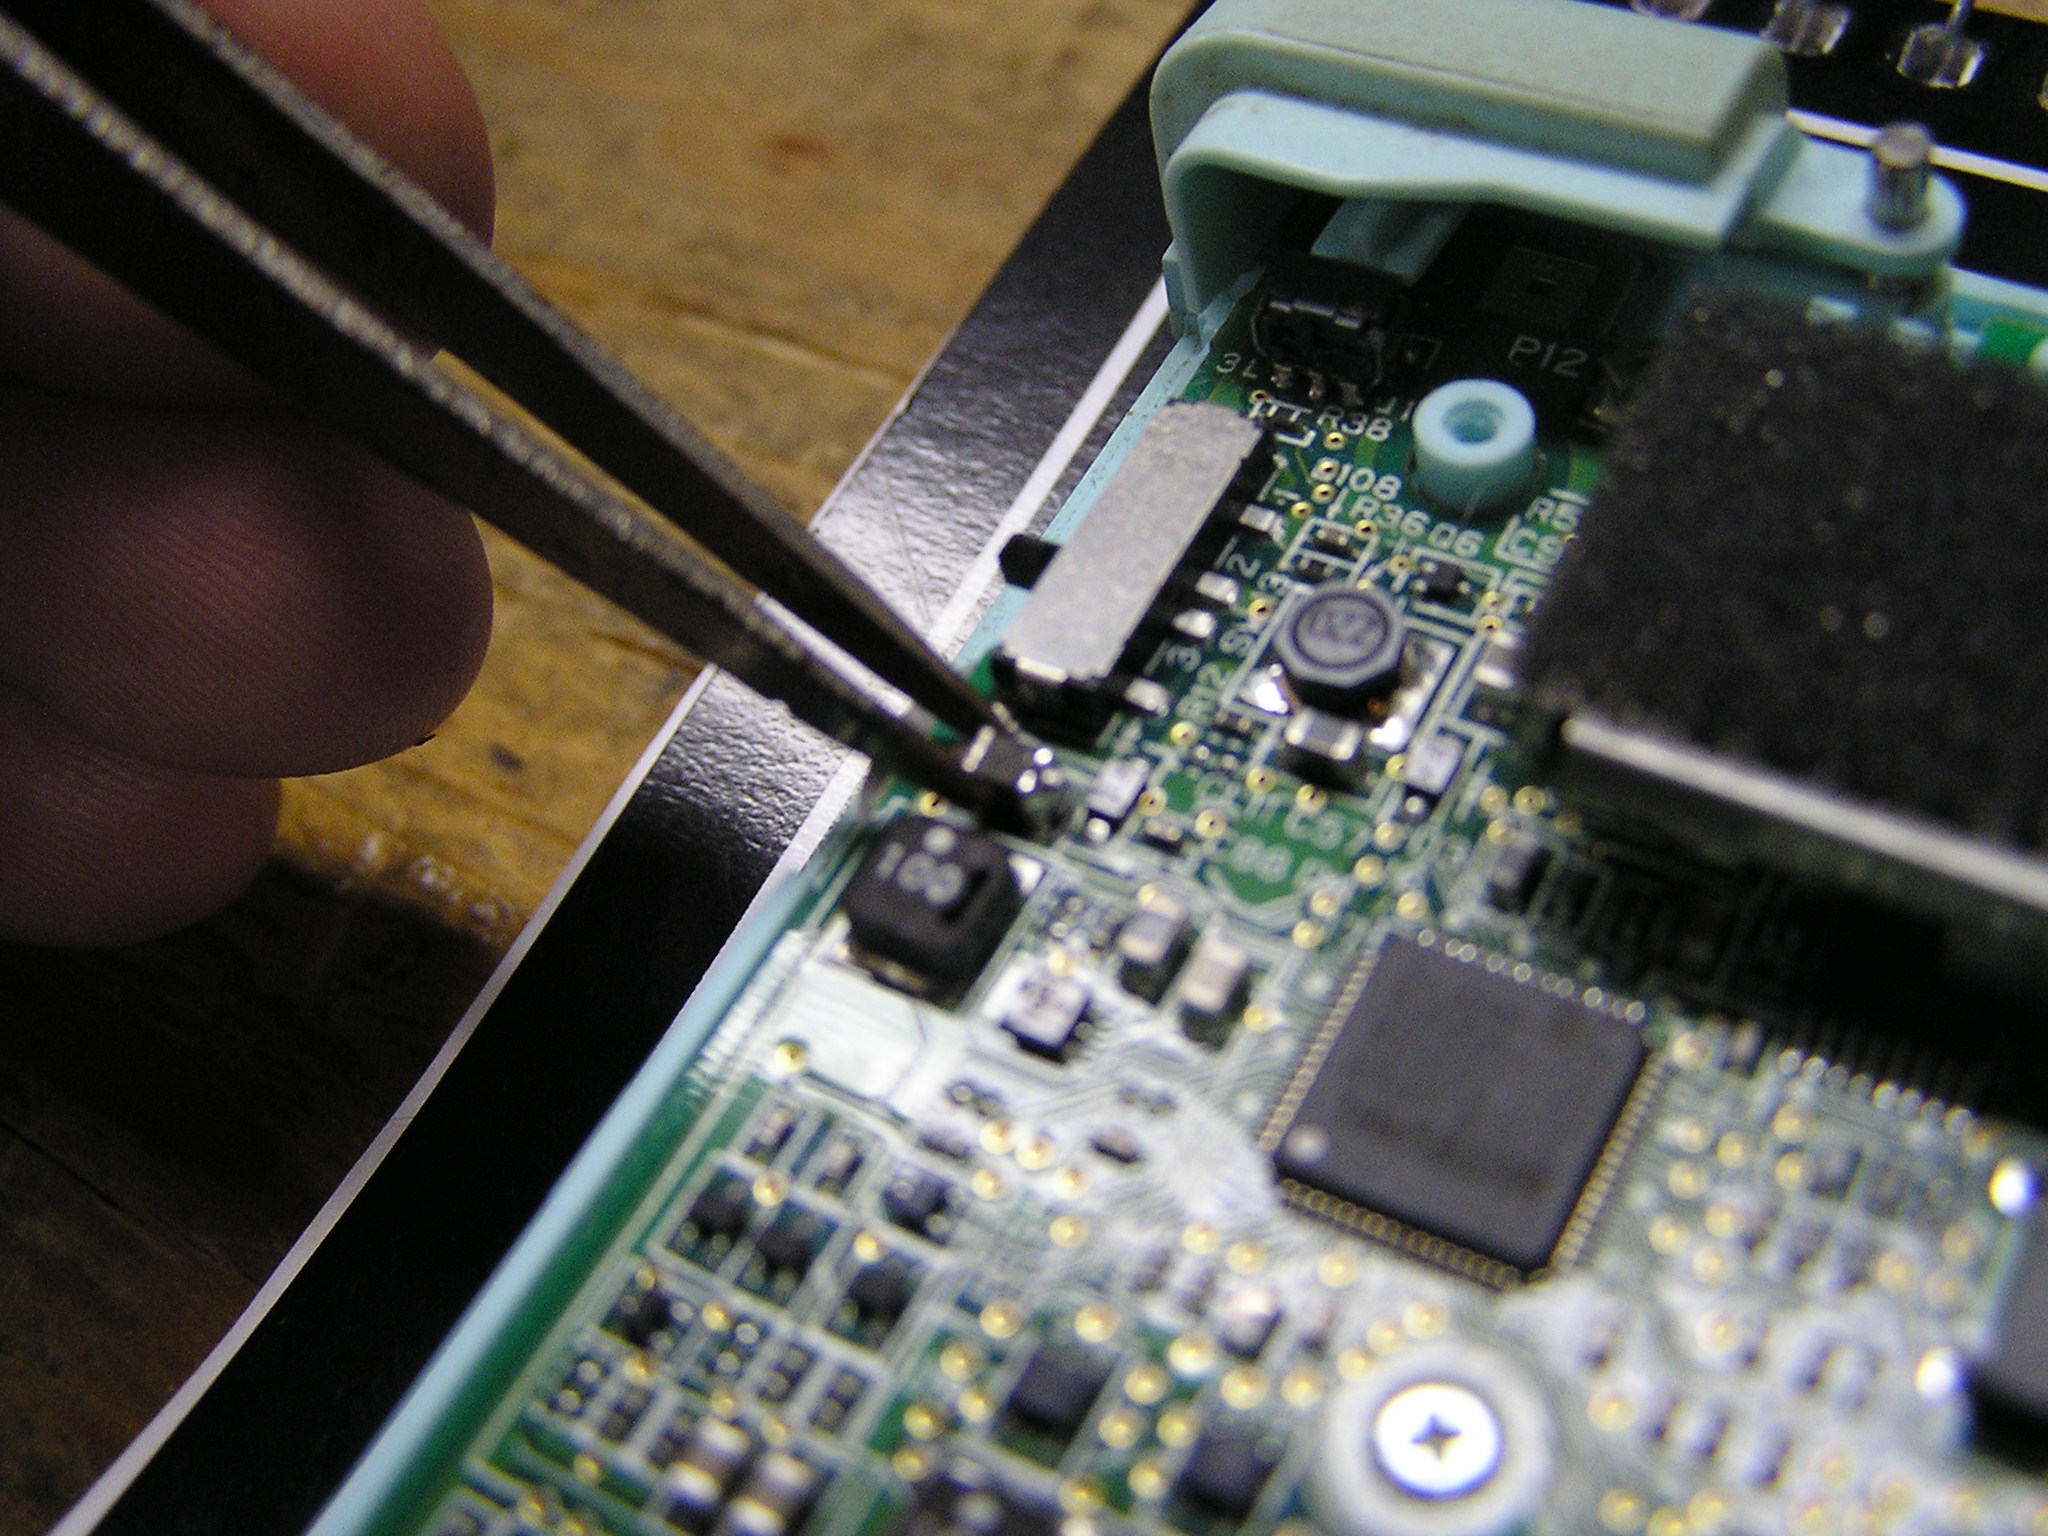 Re-solder part back onto motherboard